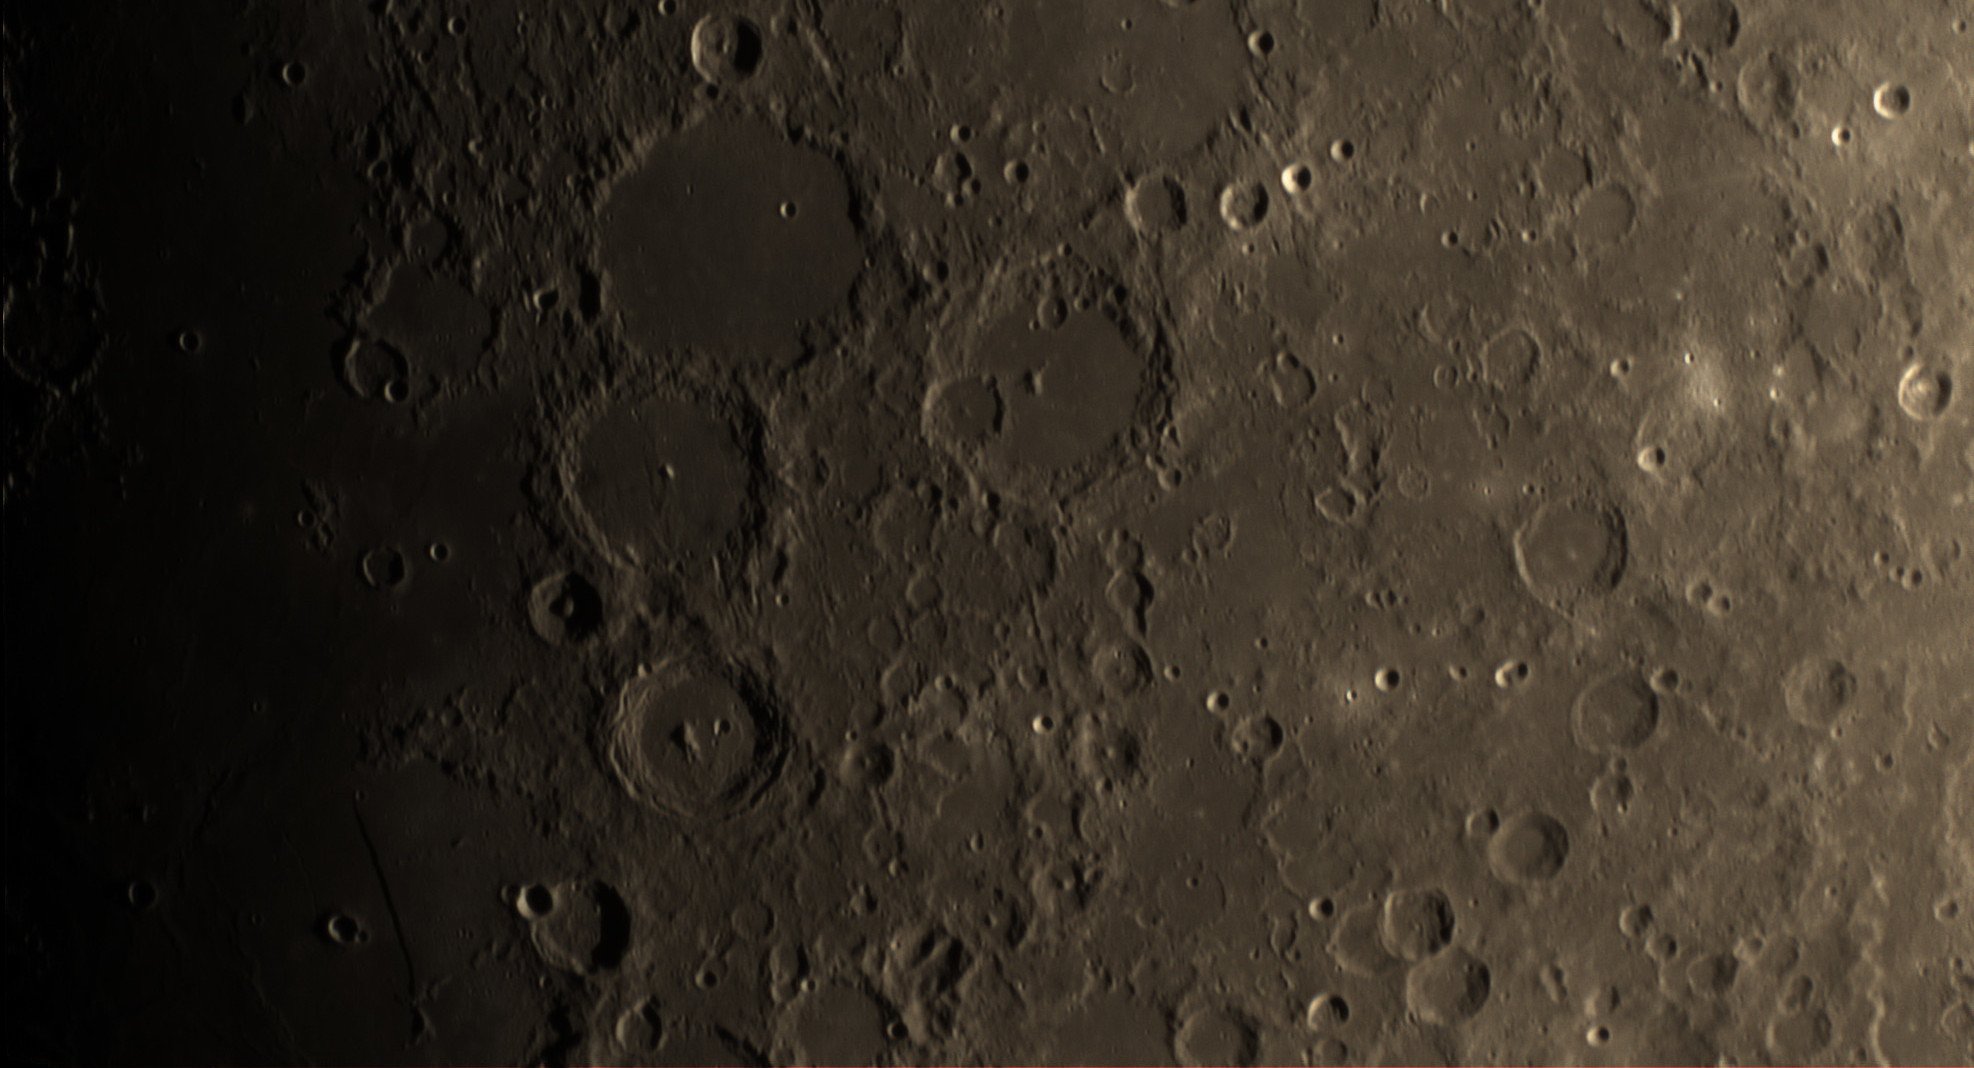 2021-08-16-2013 7-Moon Lapl5 Ap6 Conv 1